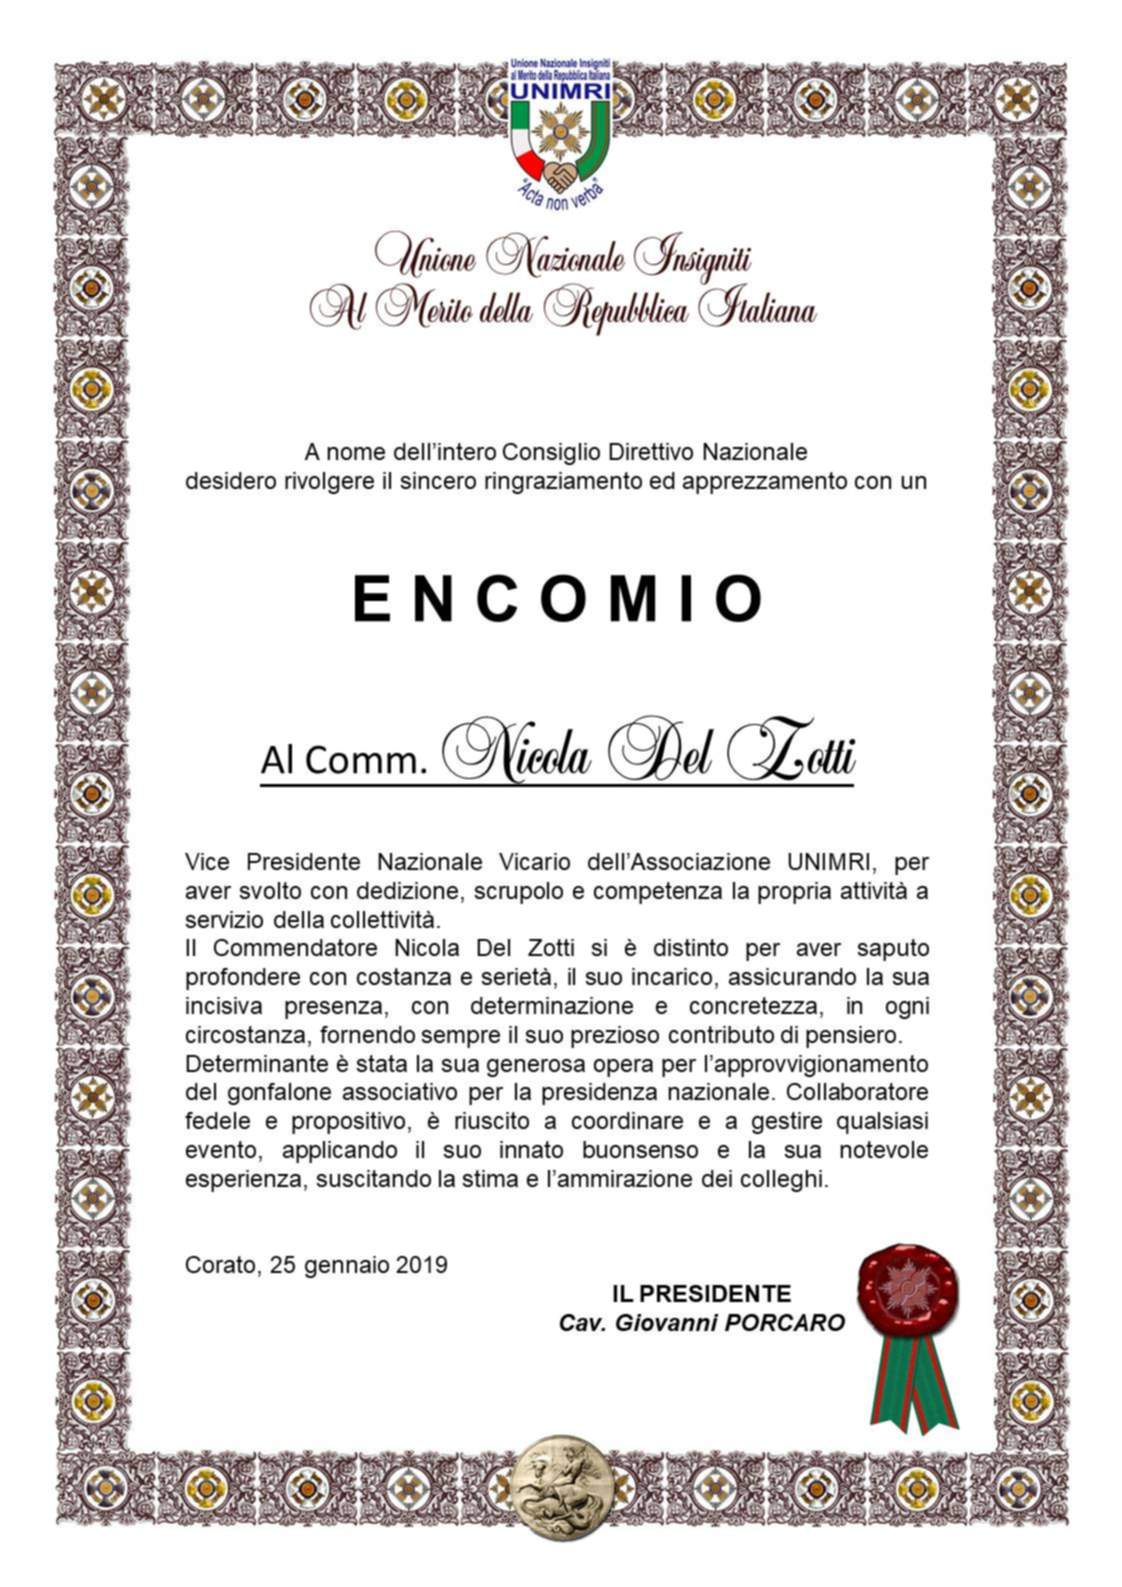 Encomio2